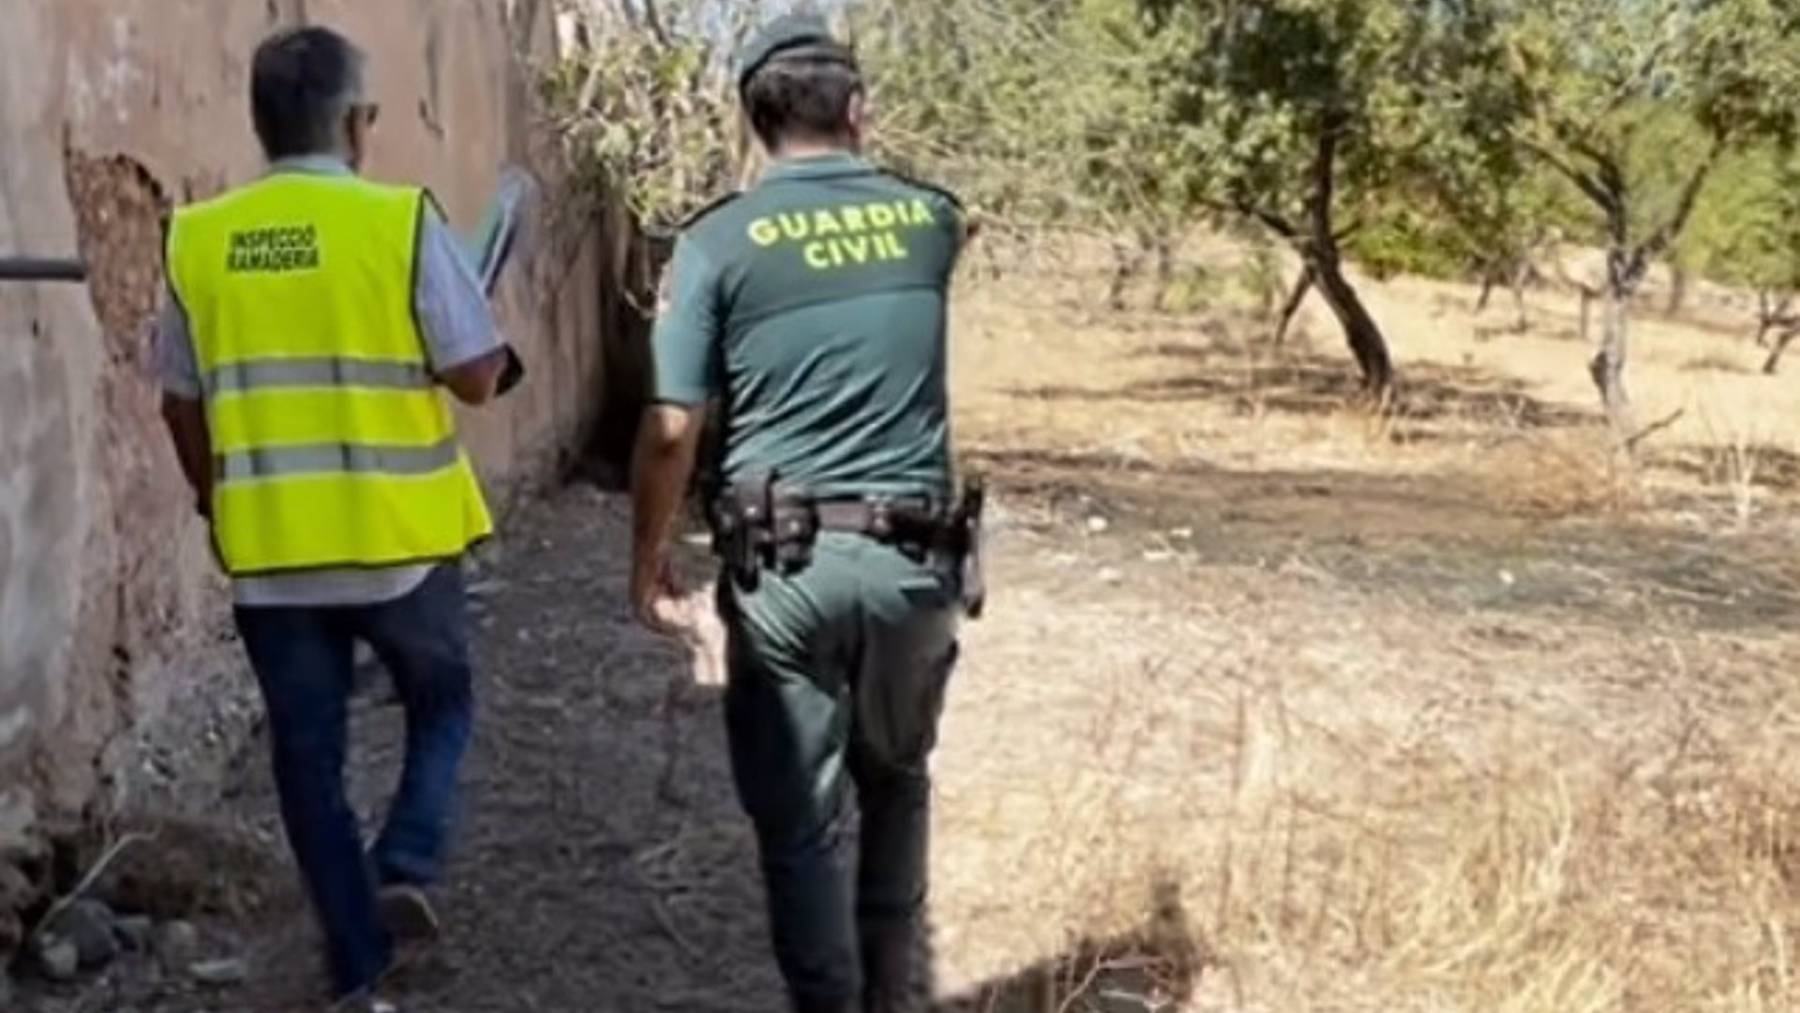 La Guardia Civil y Sanidad Animal inspeccionan la explotación ganadera ilegal.